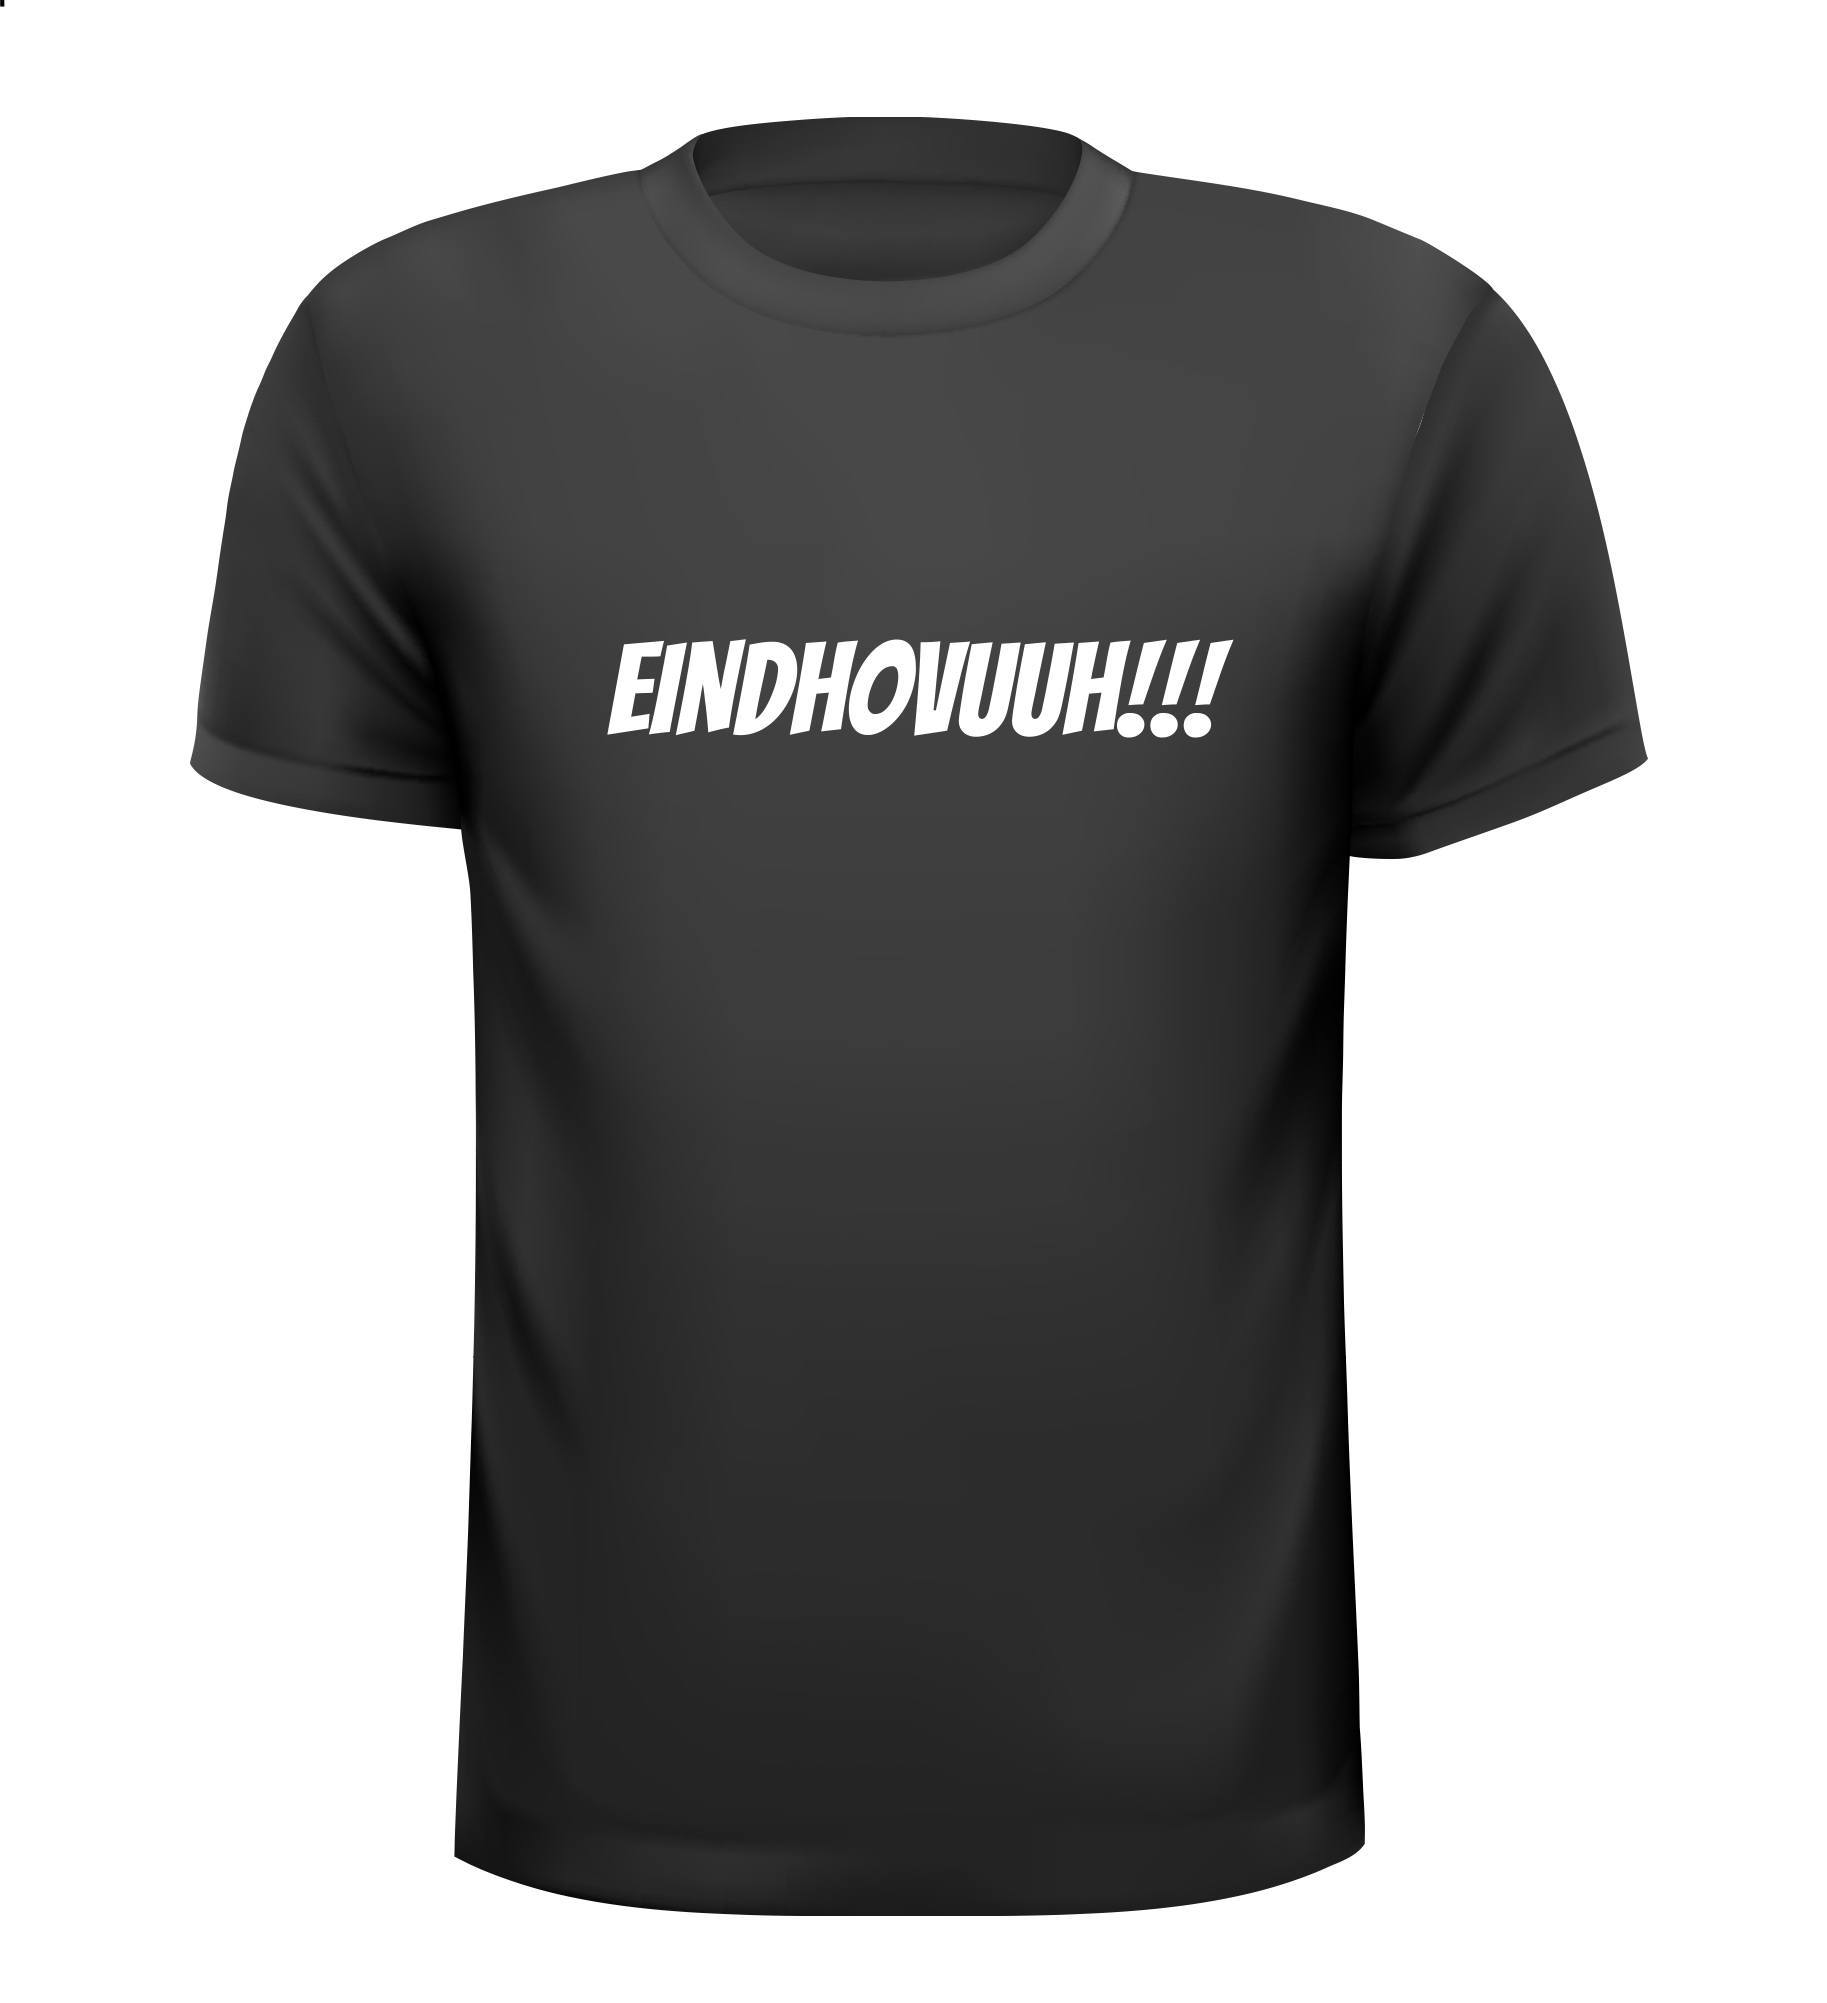 T-shirt Eindhoven Eindhovuuh!!!